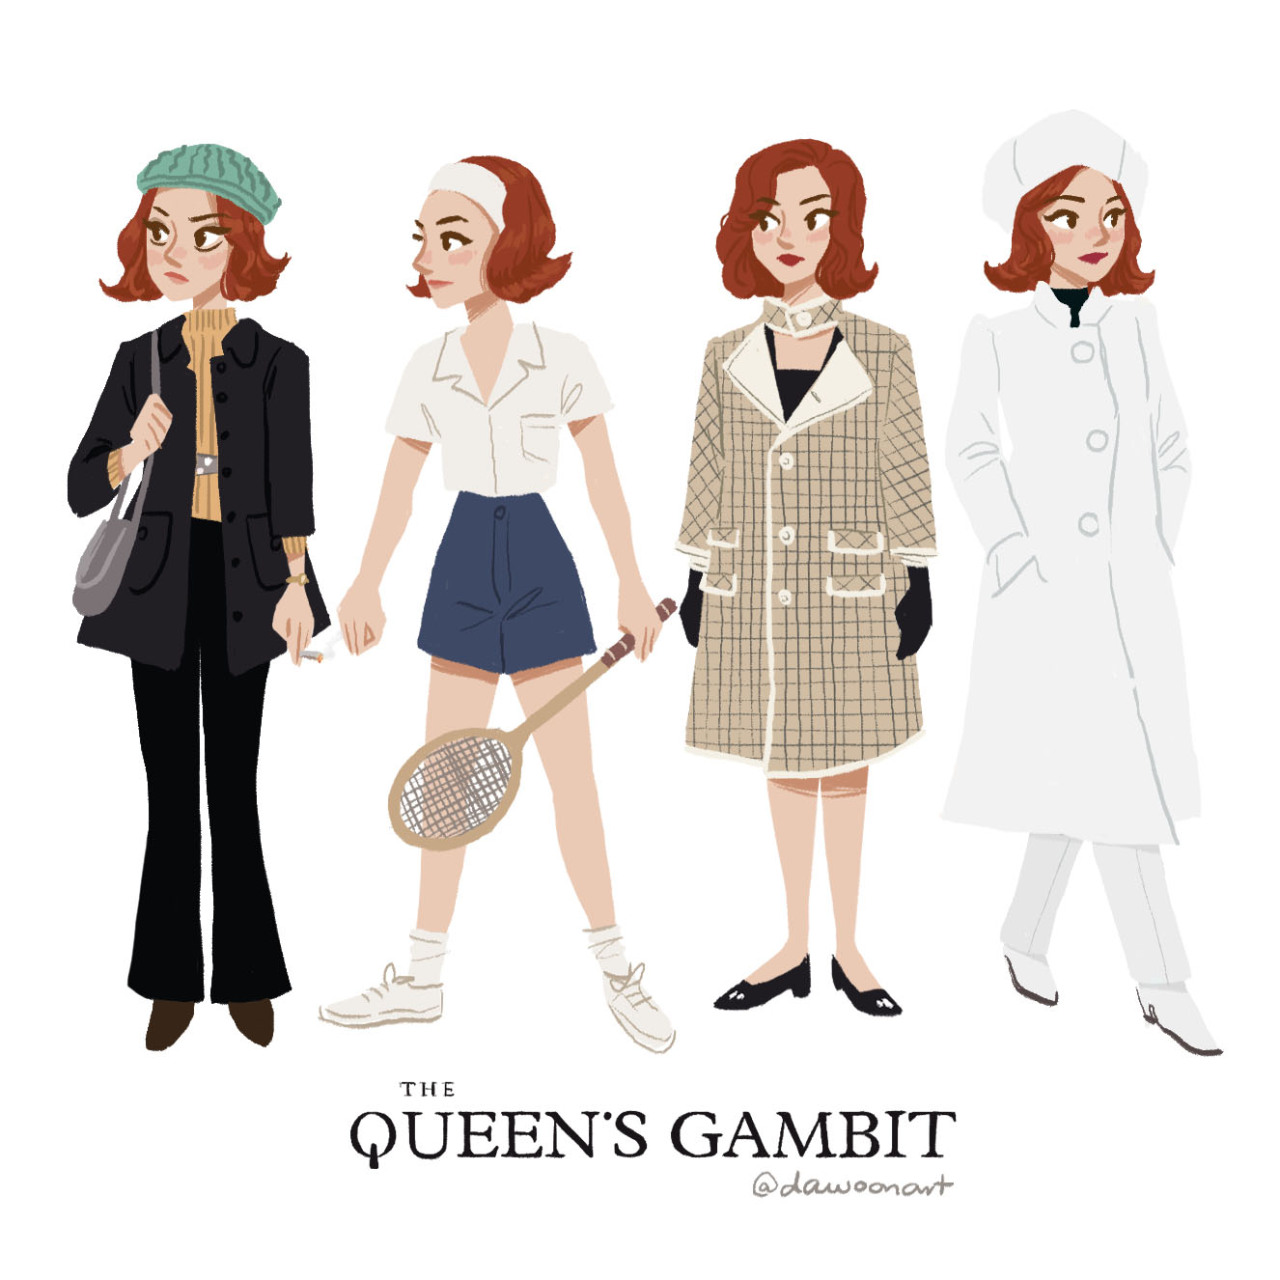 We love Beth Harmon's style in The Queen's Gambit